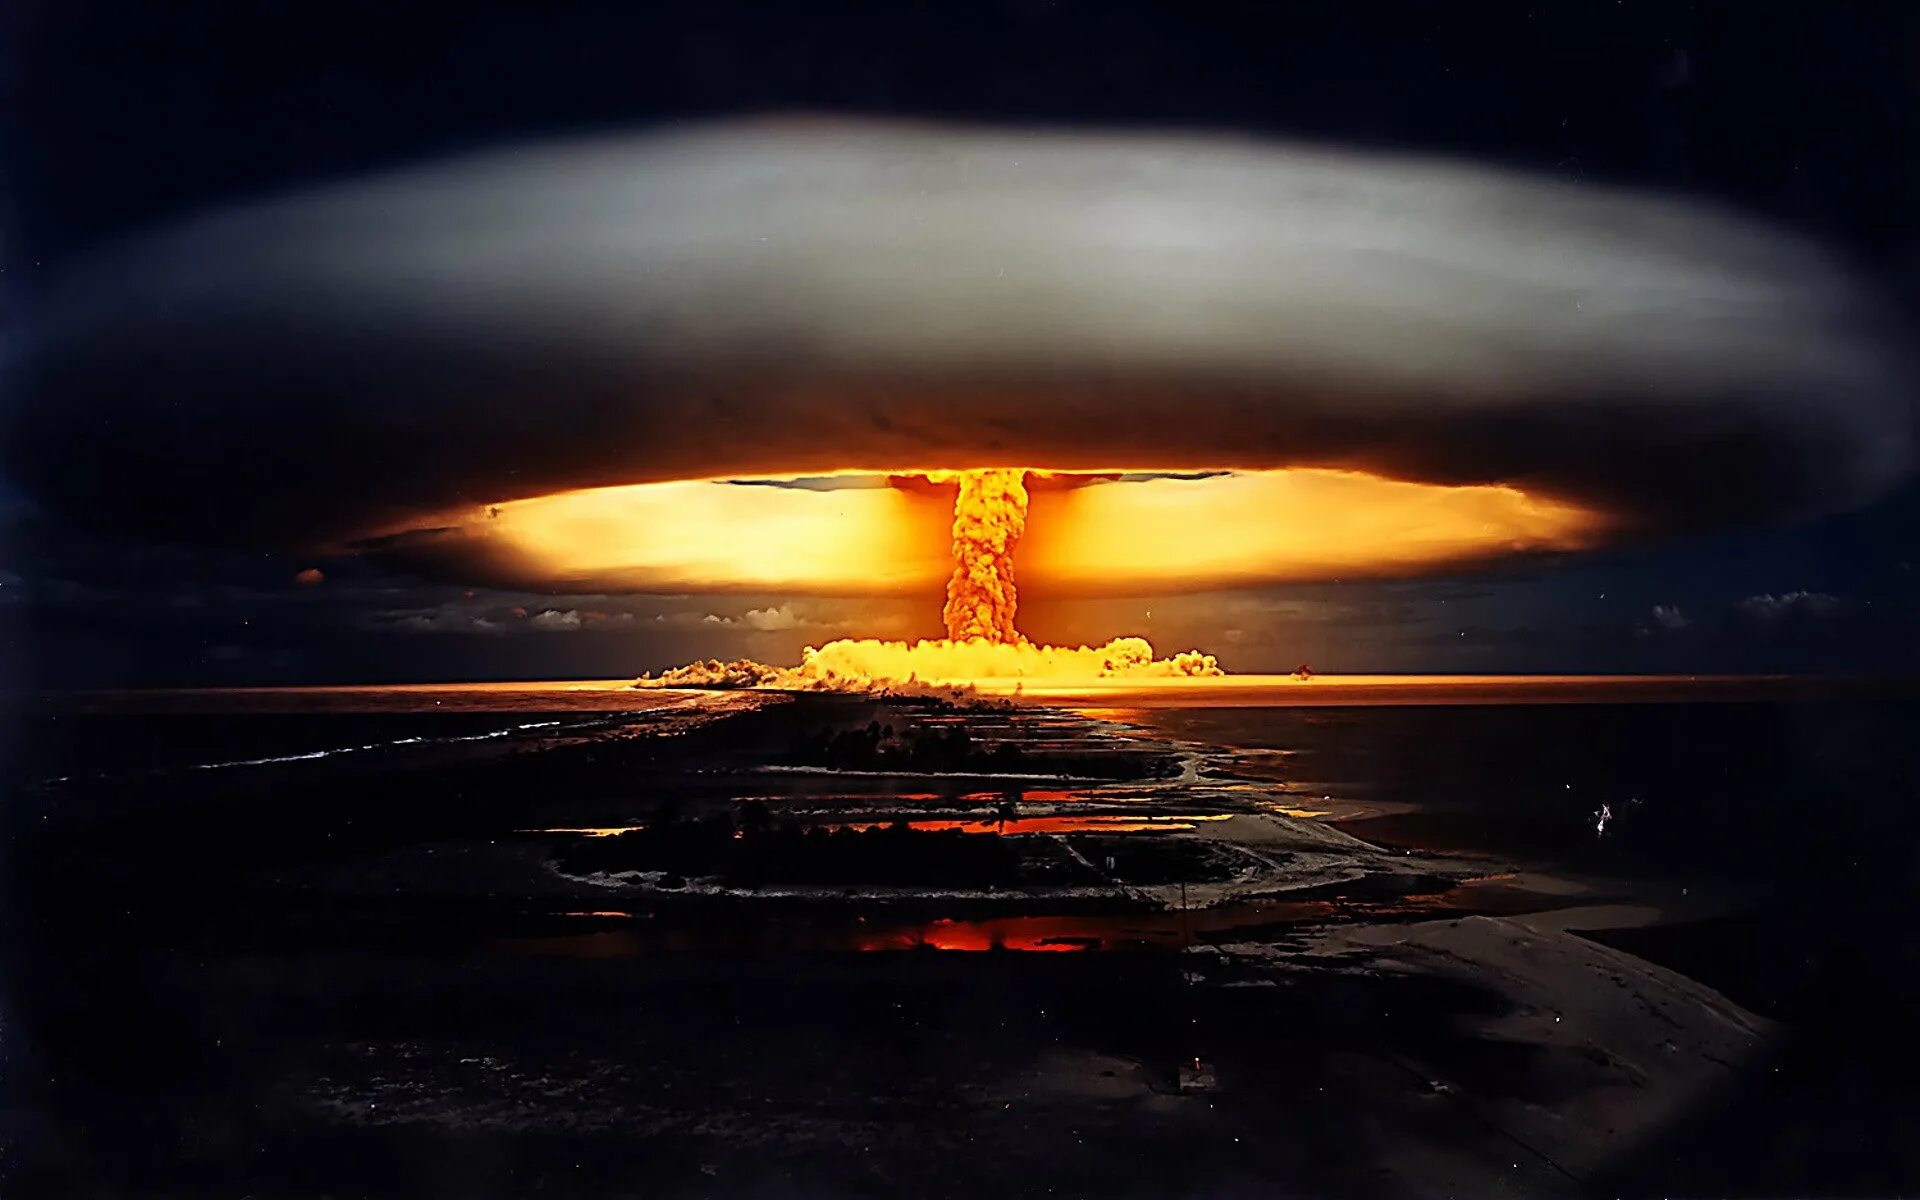 Ядерный взрыв возможен. Царь бомба водородная бомба. Взрыв атомной бомбы "ядерный малыш". Царь бомба 1961. Царь бомба России взрыв.